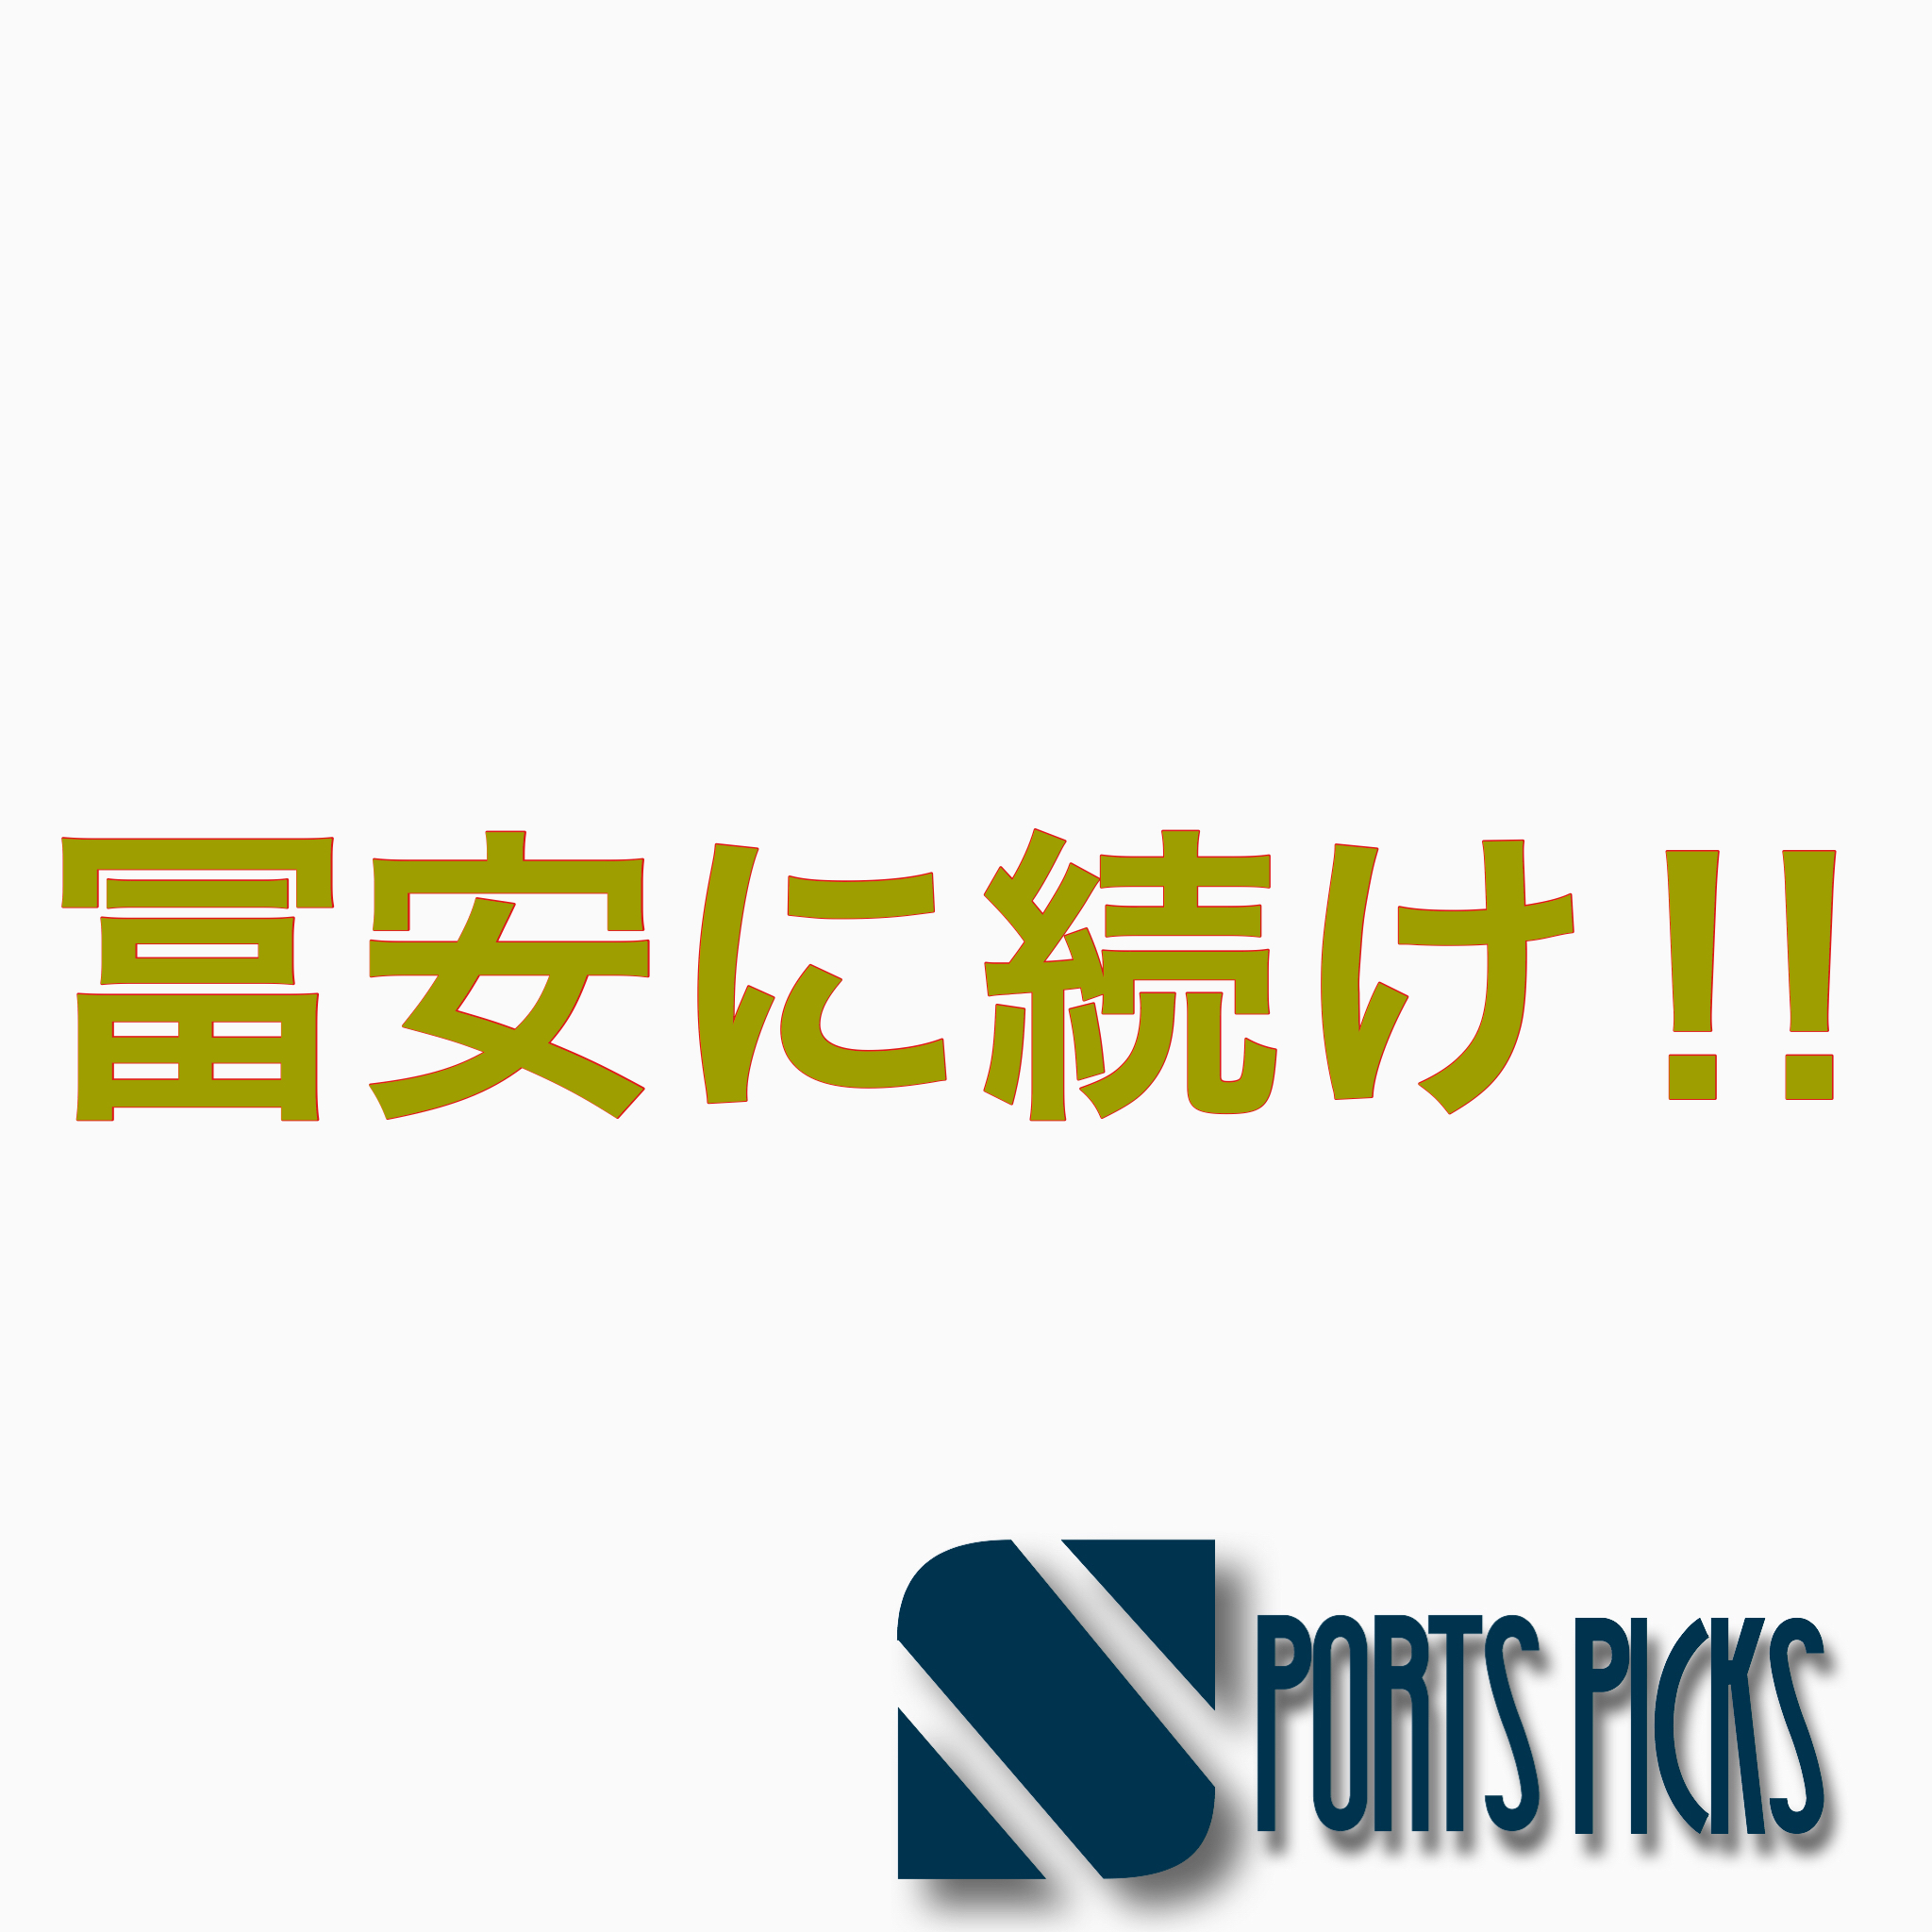 井手口陽介のプレースタイルとは 日本最高峰ダイナモ Spoblo Players File